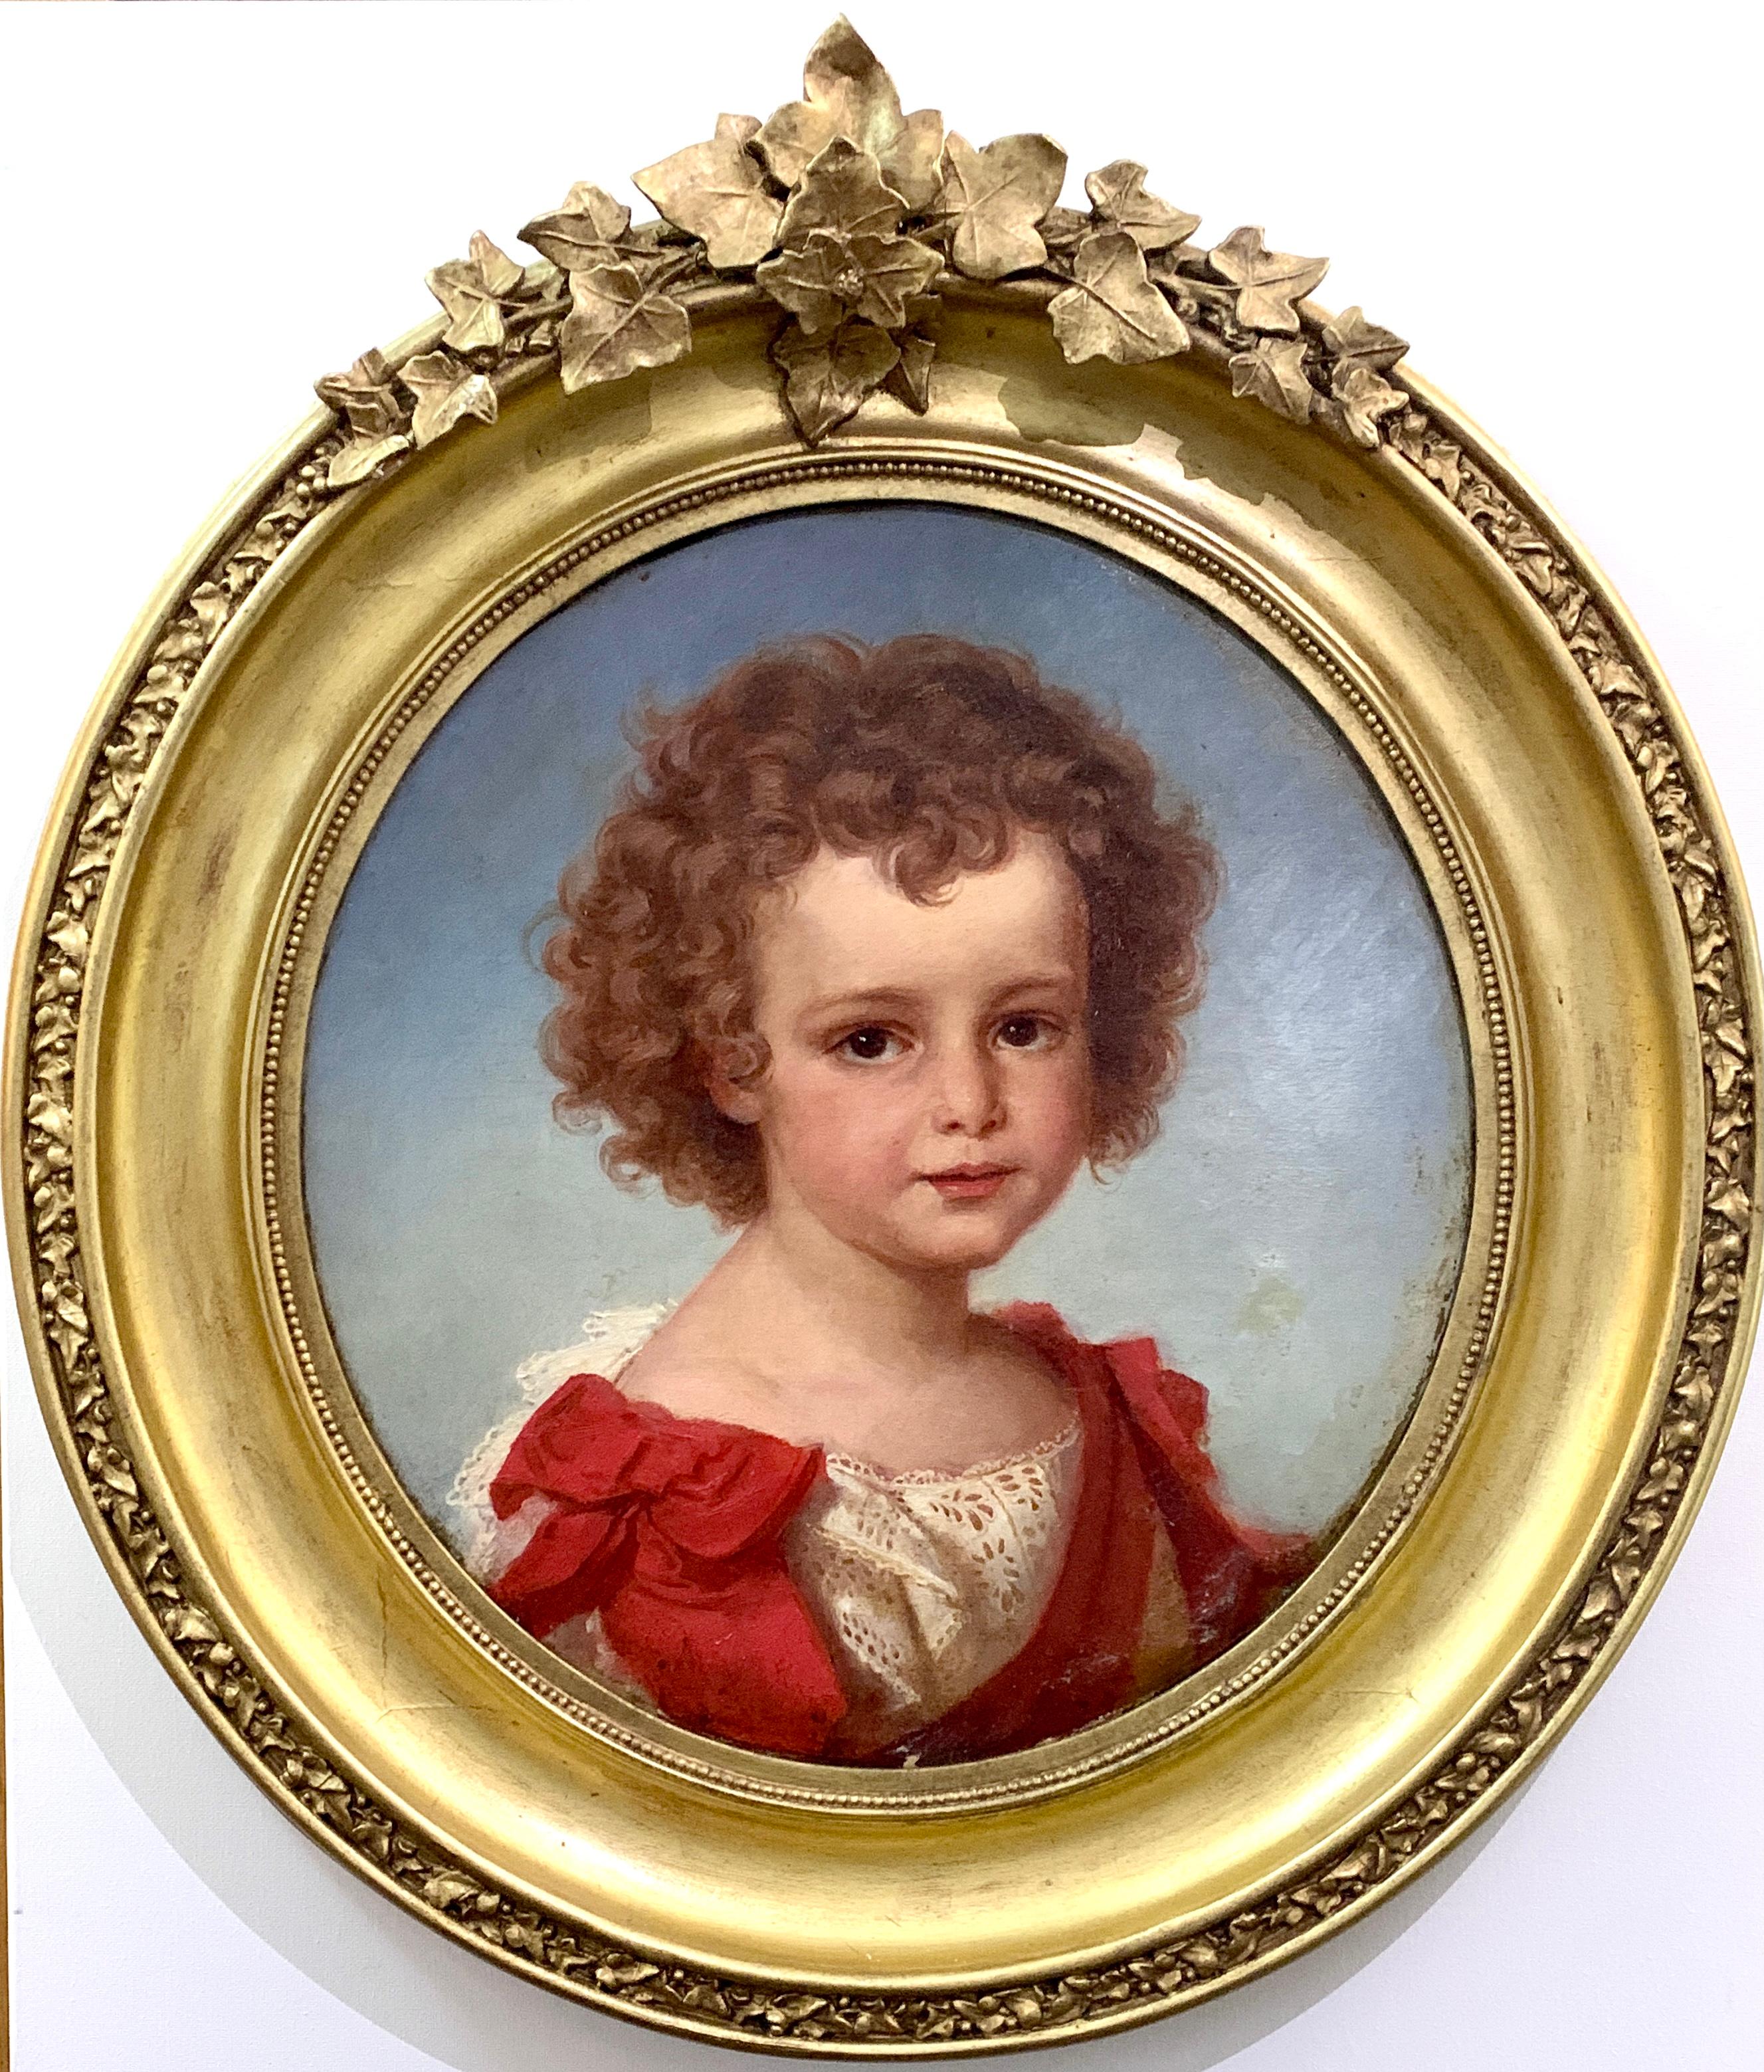 Ovales Ölporträt eines jungen Mädchens mit rotem und weißem Kleid aus dem 19. Jahrhundert – Painting von David Simonson